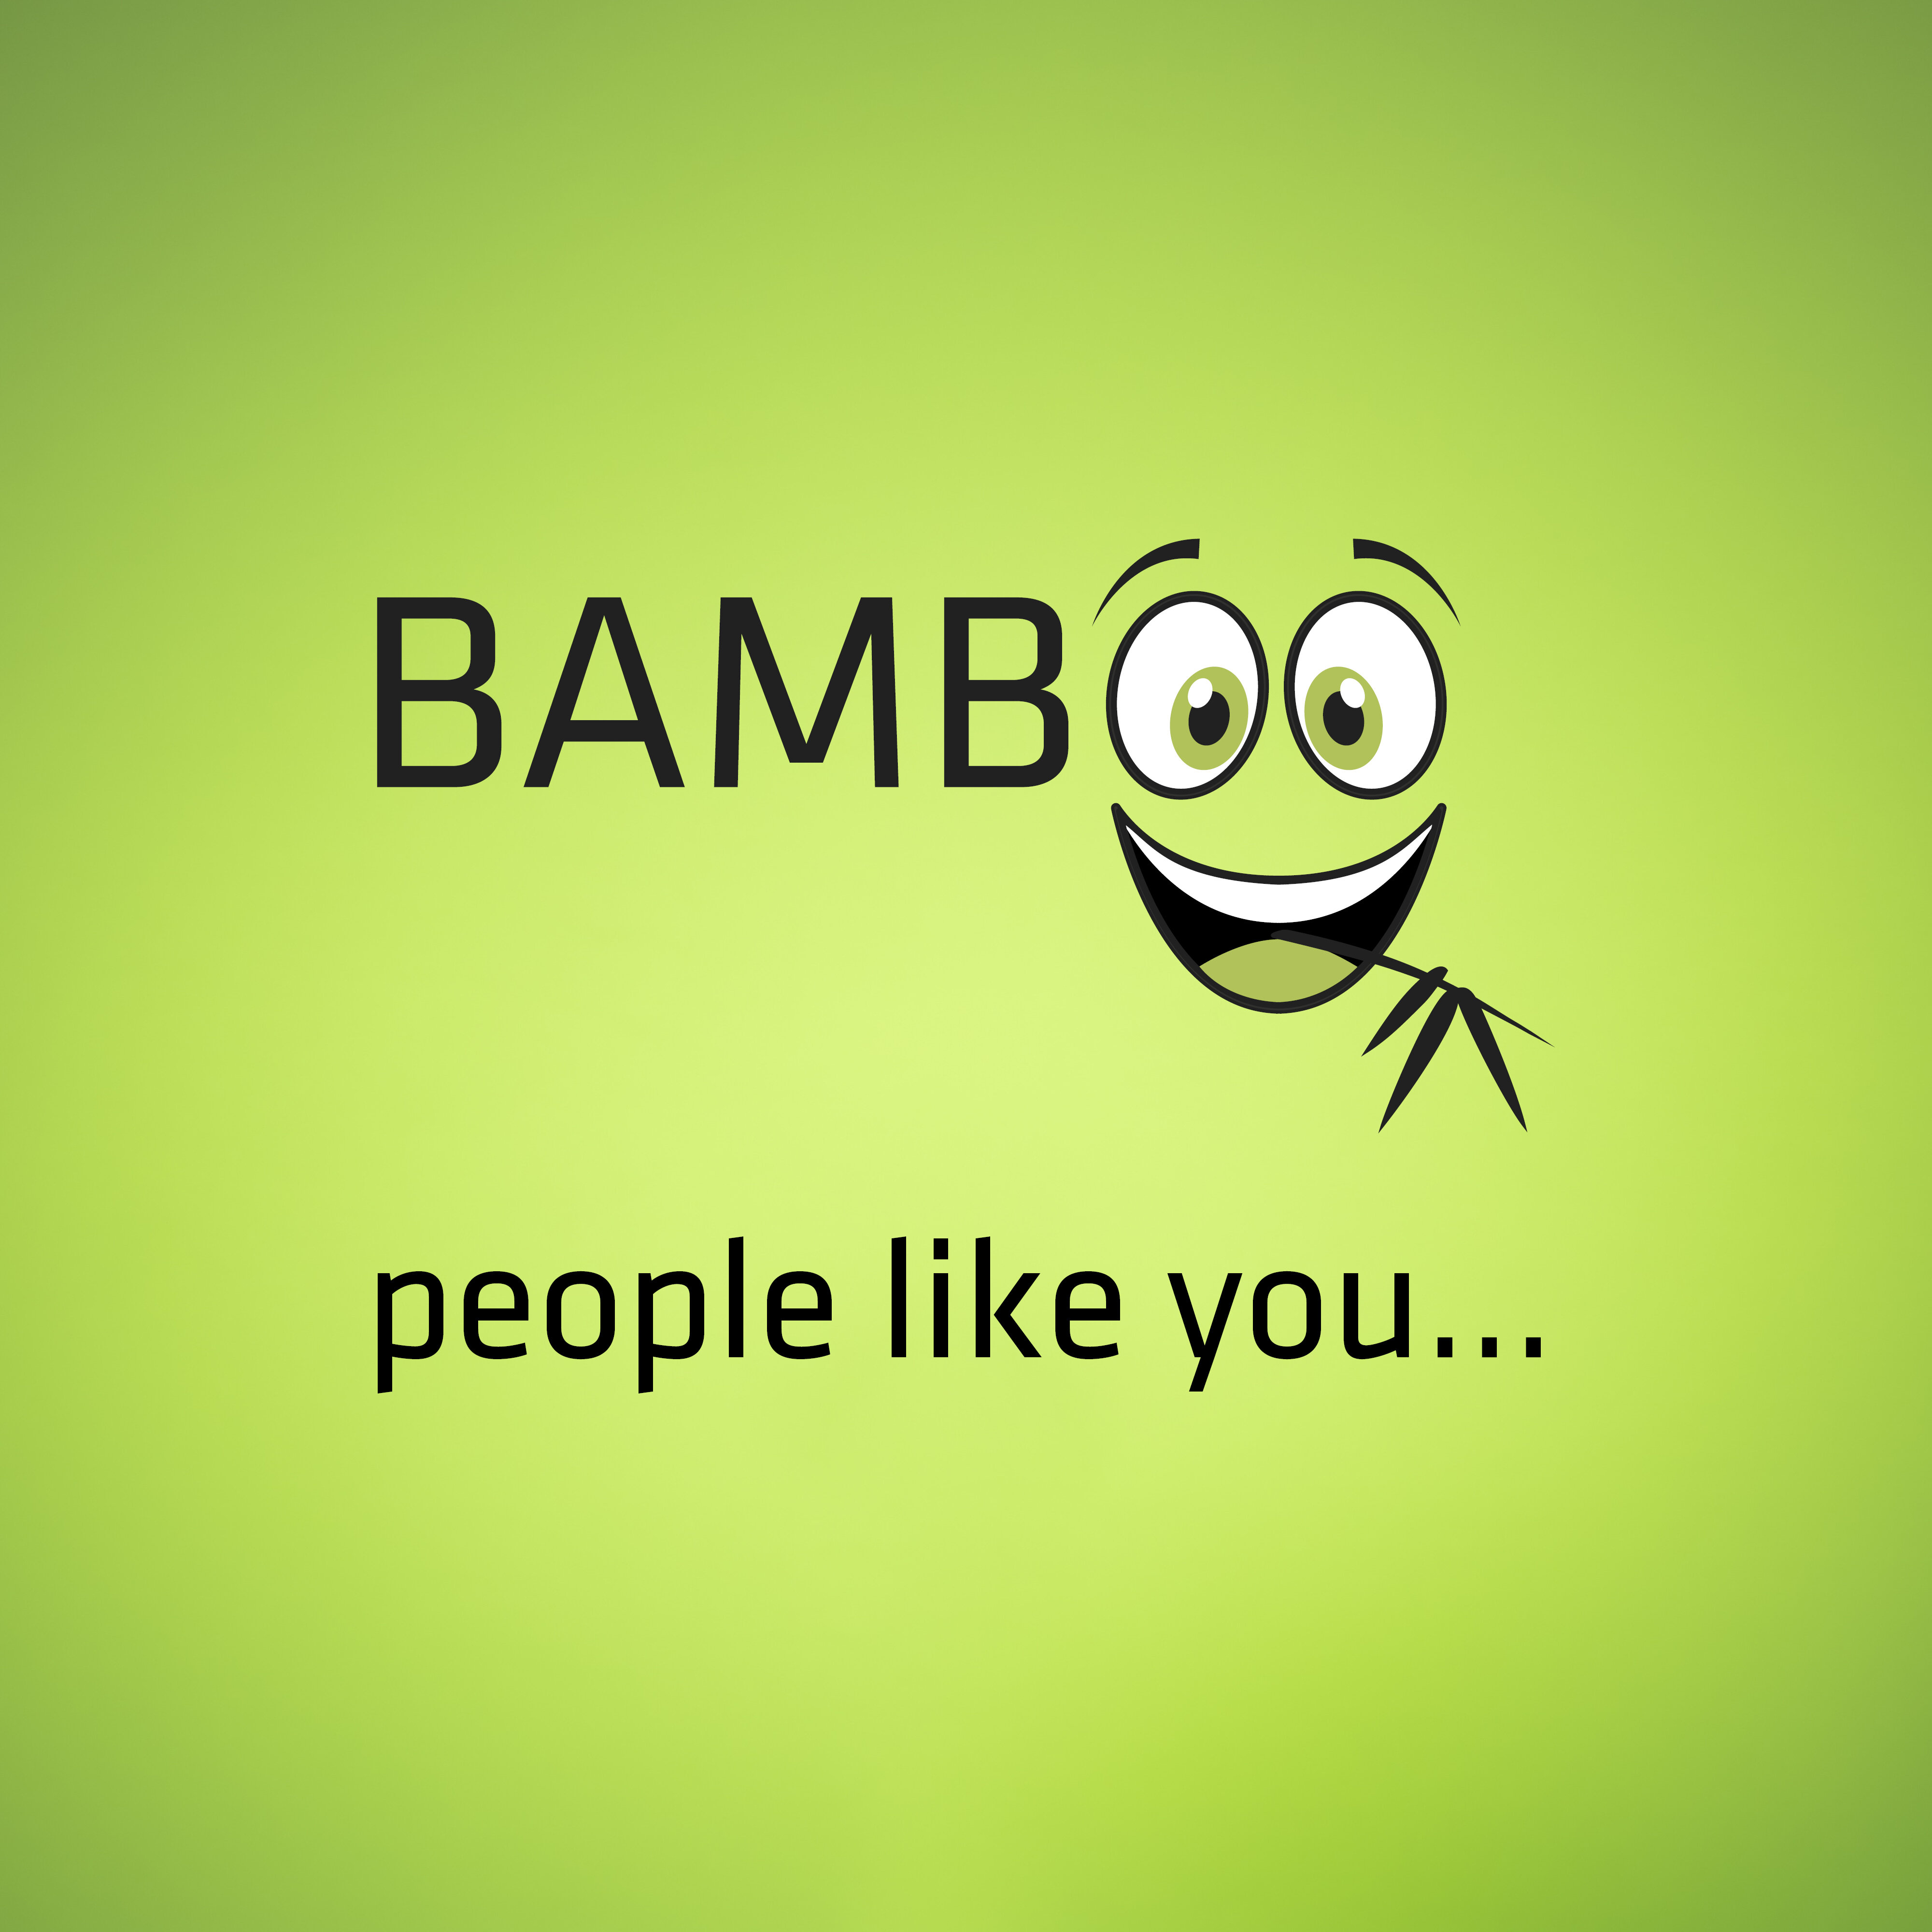 Das Wort Bamboo als lachendes Gesicht mit Bambusblatt im Mund, ergänzt um die Worte "people like you". | © Bamboo Health Care GmbH